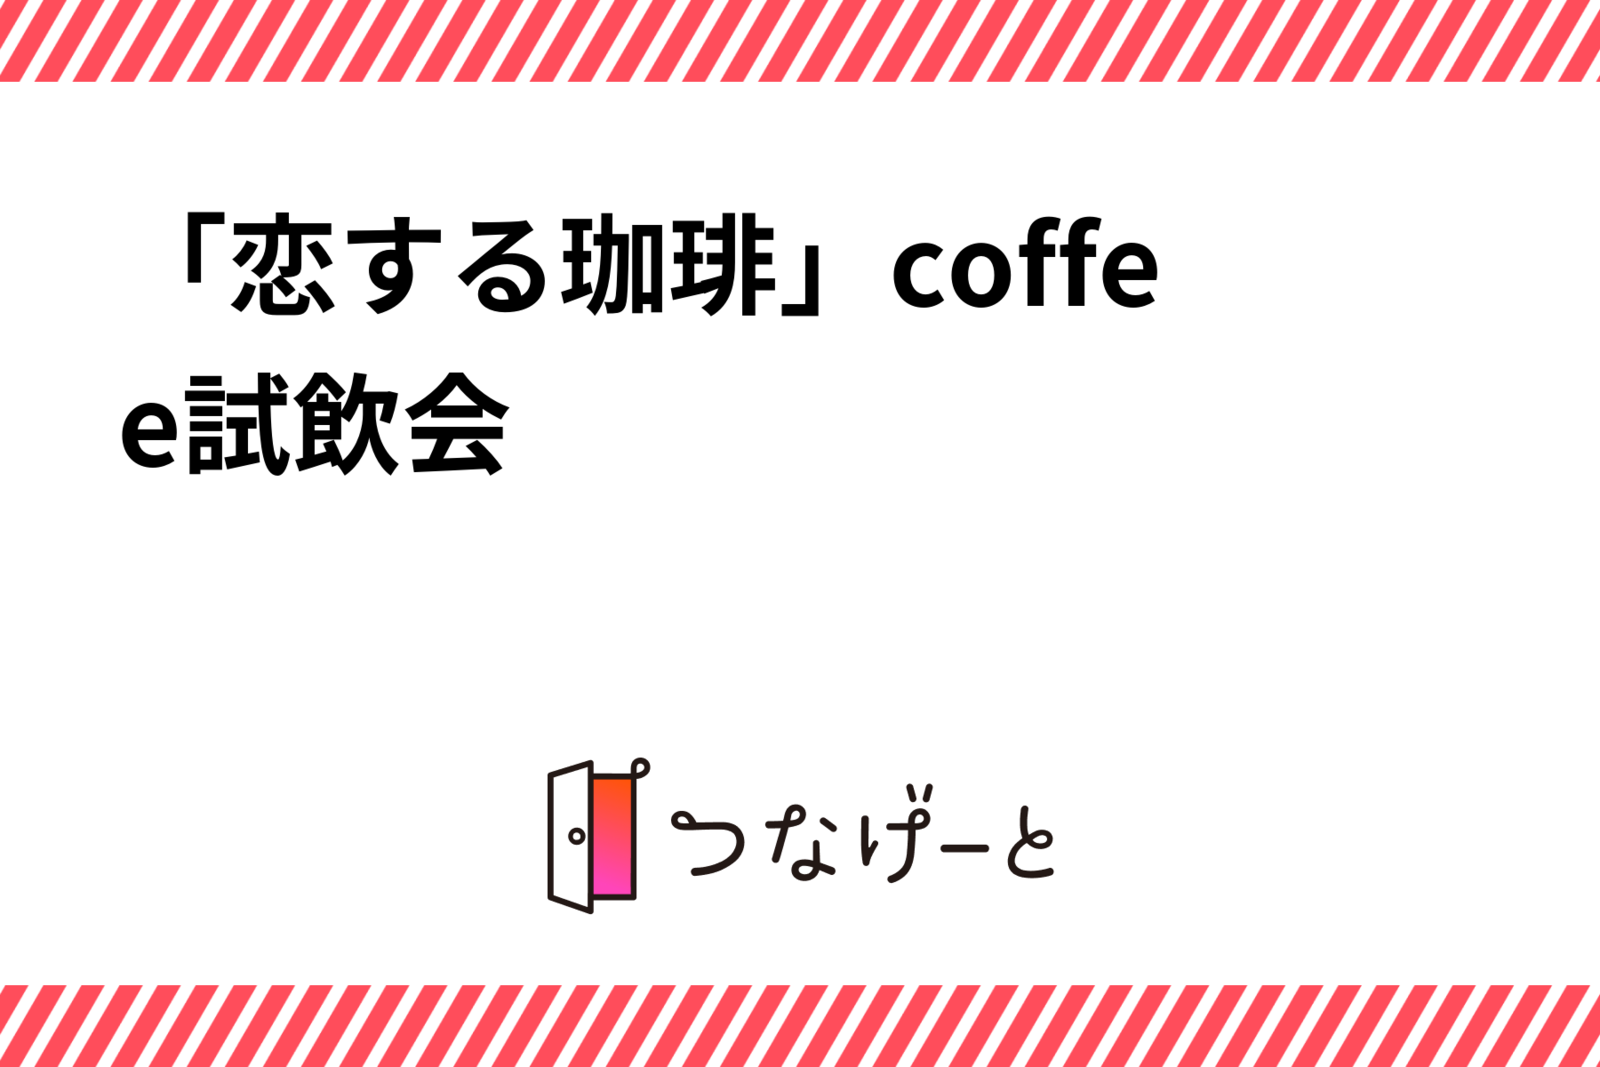 「恋する珈琲」coffee試飲会